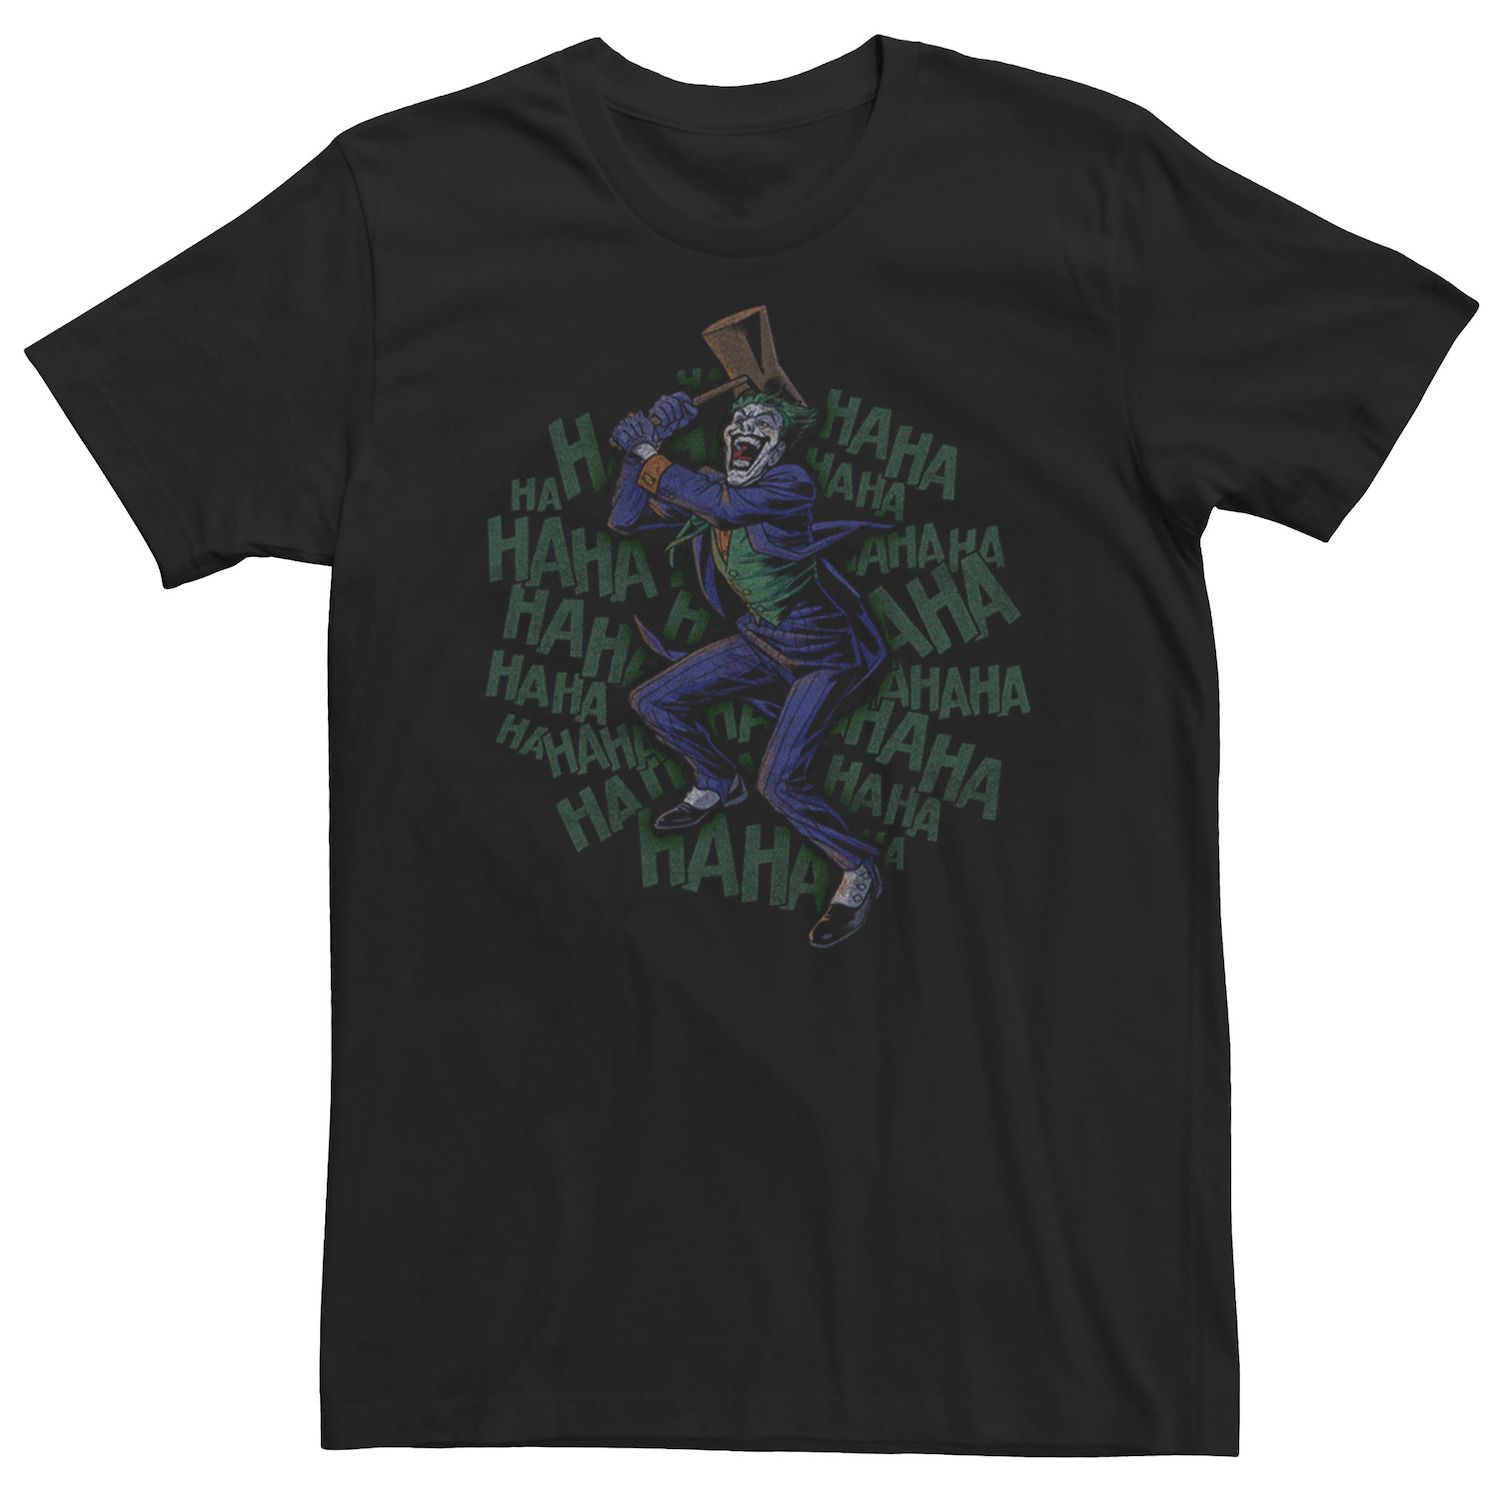 цена Мужская футболка с коллажем Batman Joker Smashing Time DC Comics